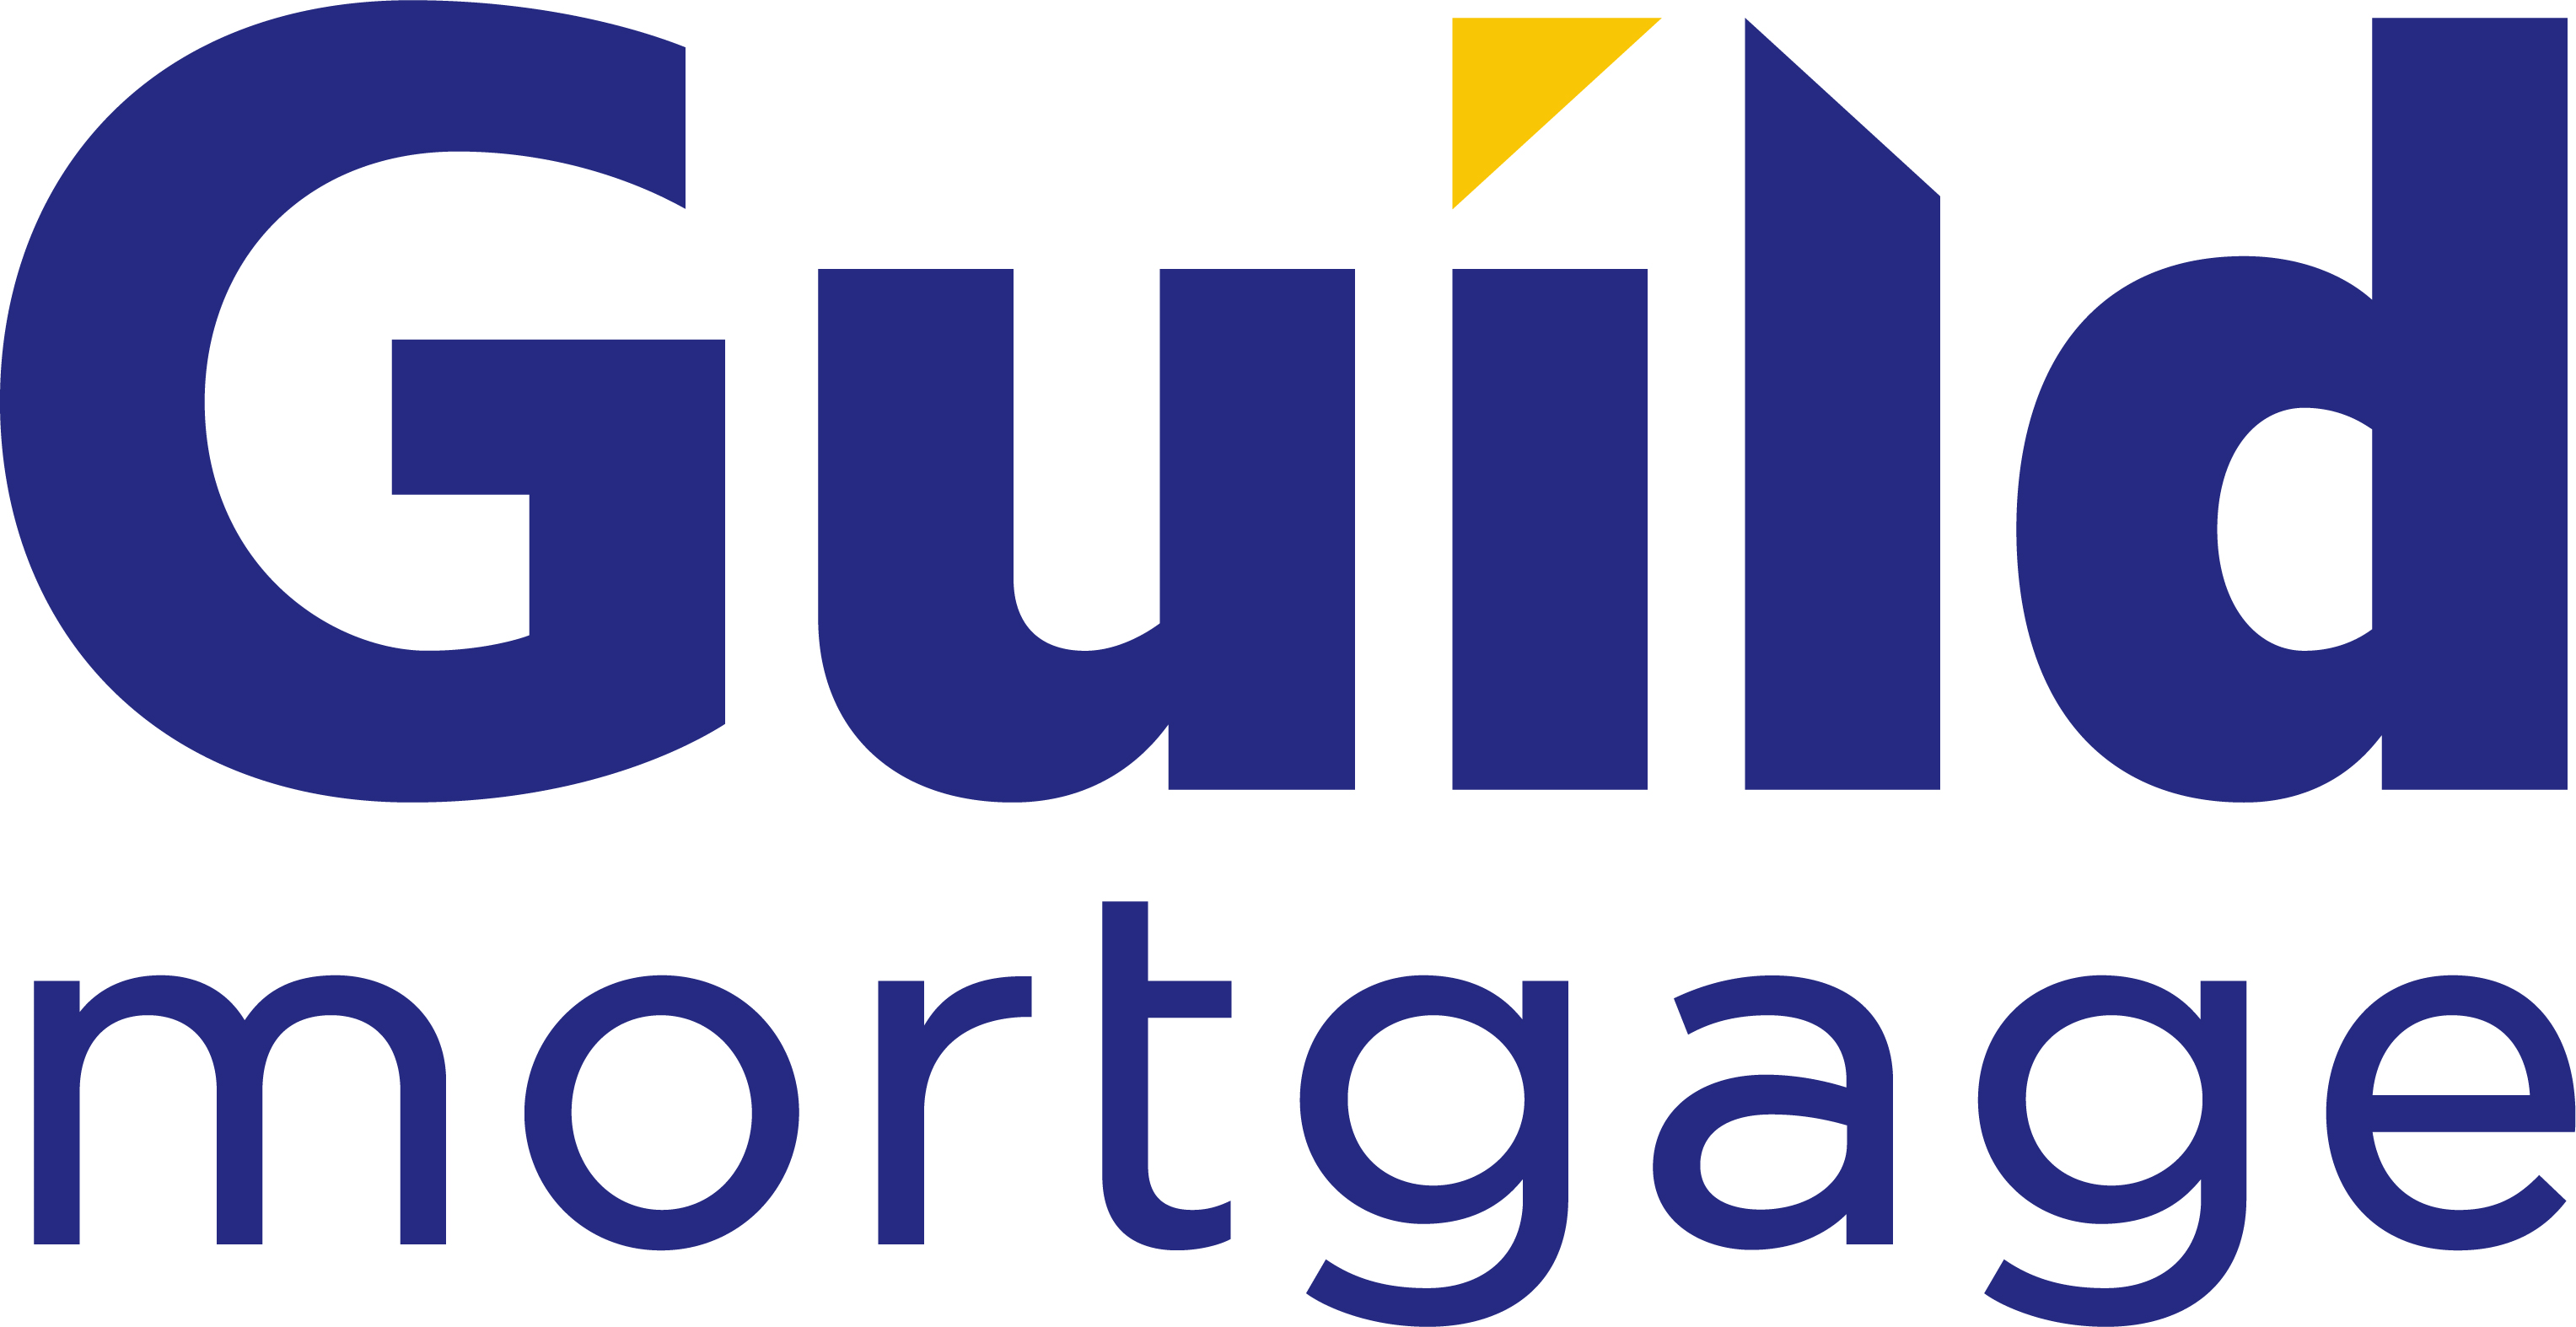 Guild Mortgage Company logo